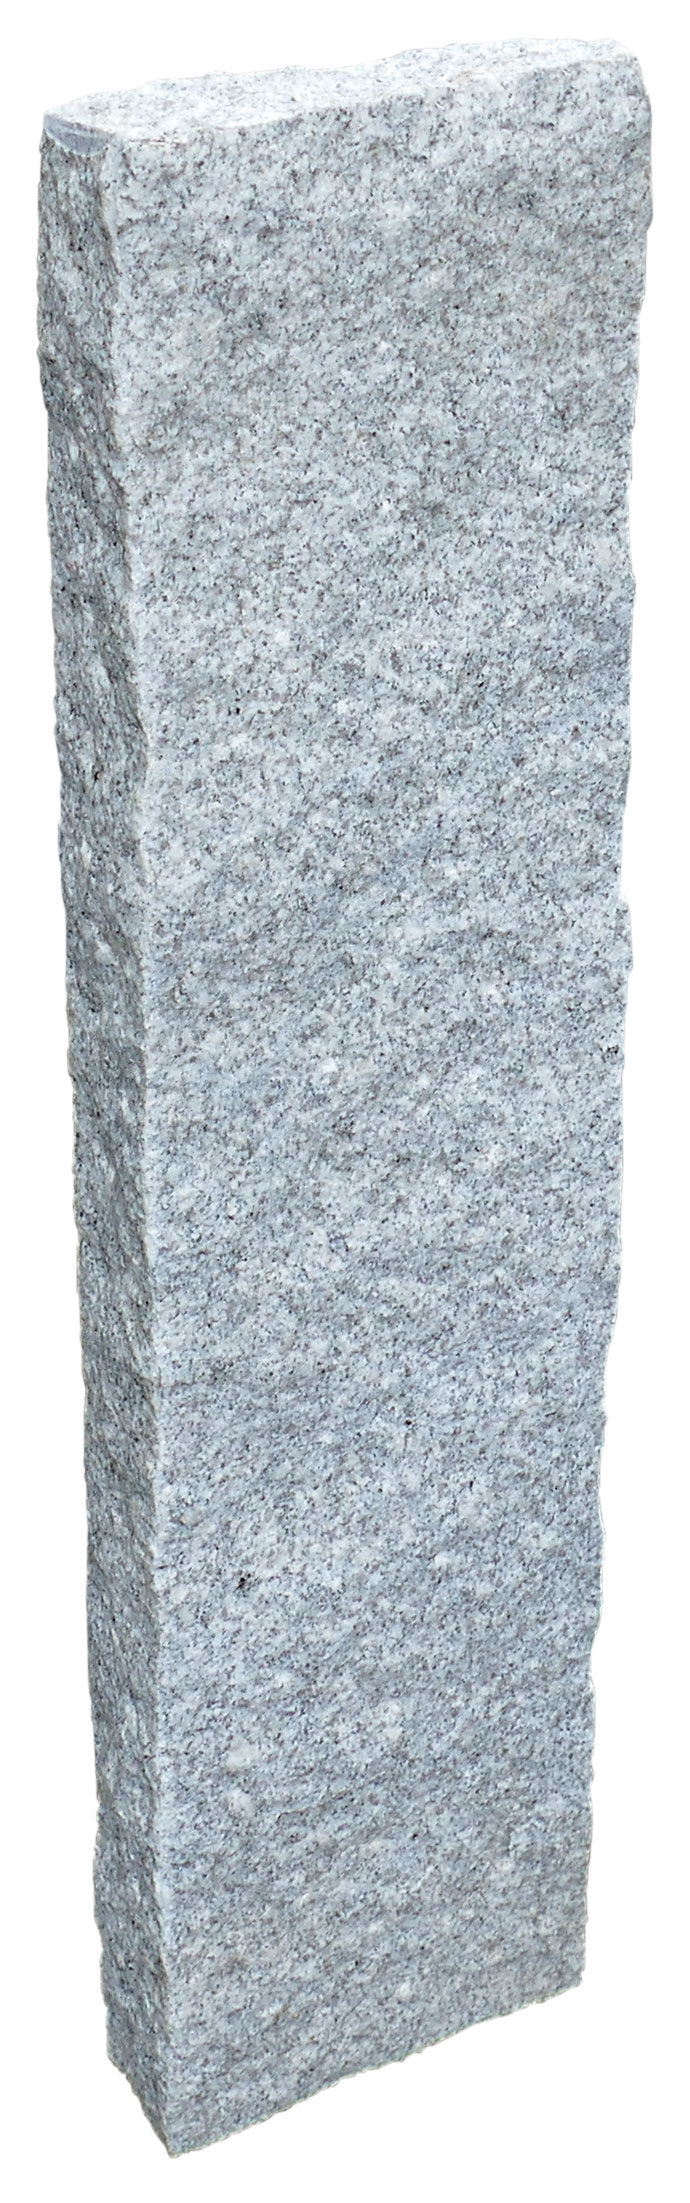 deevert - palissade en pierre naturelle – granit - 05